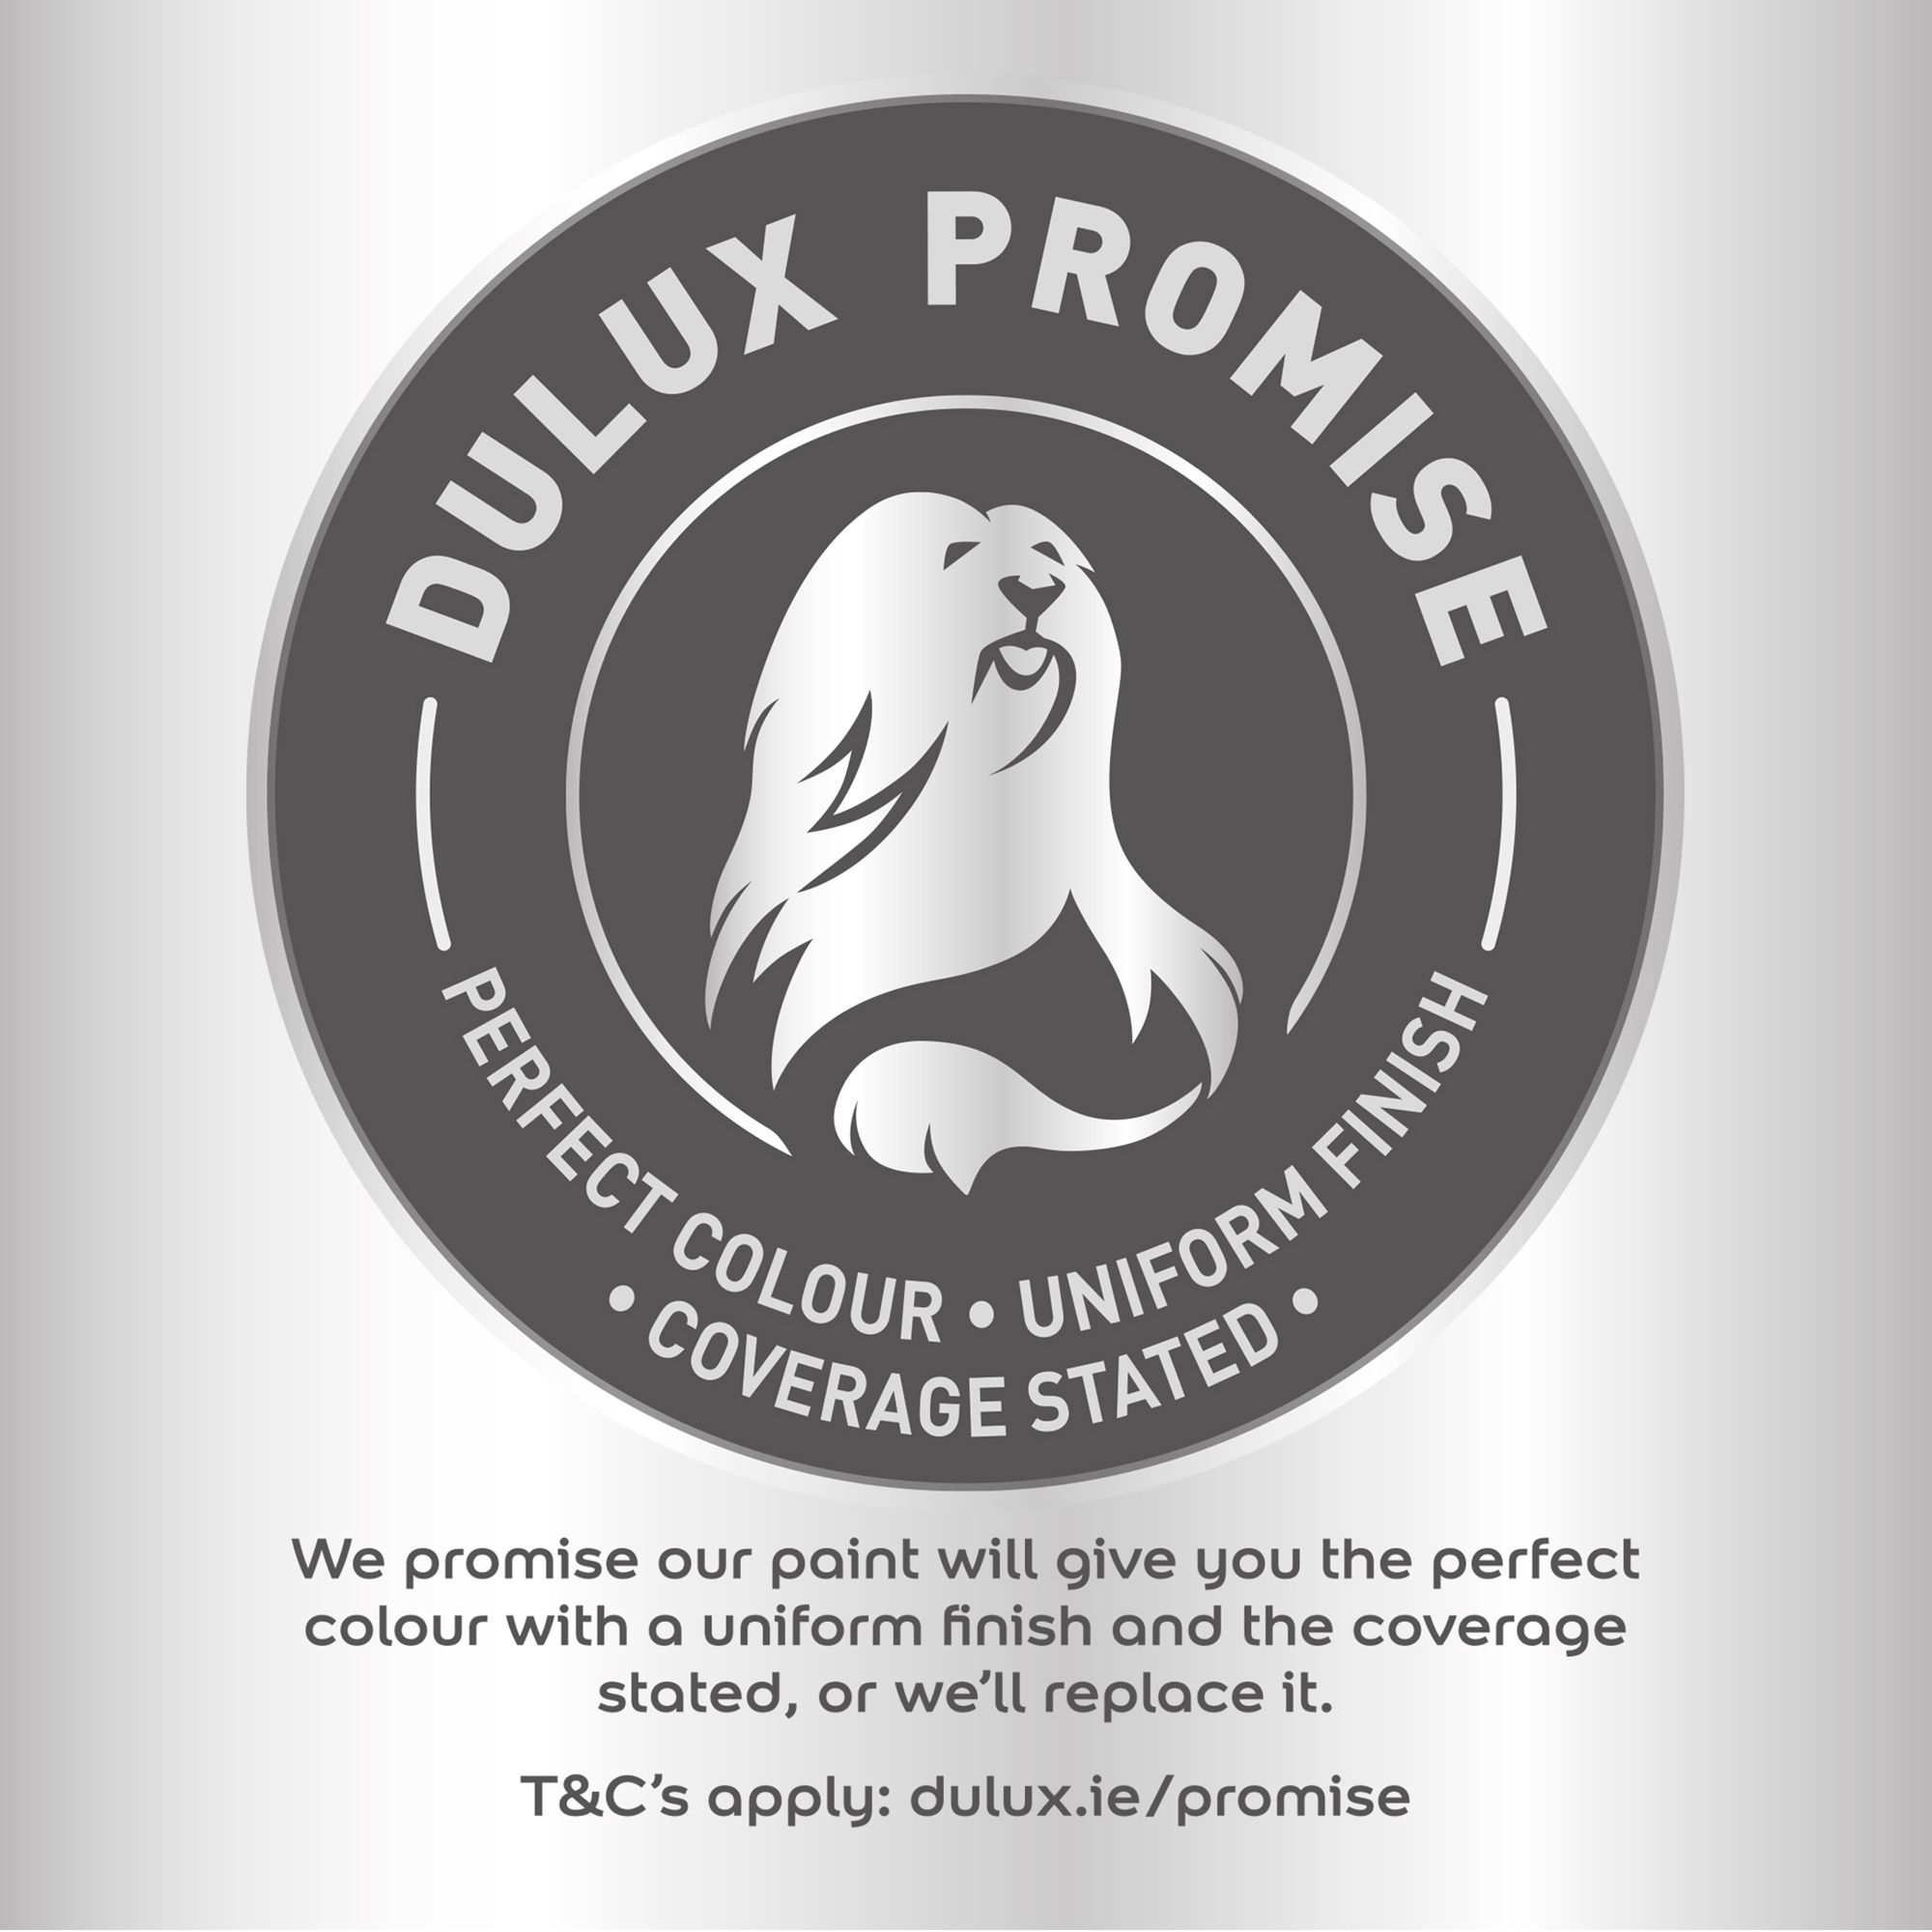 Dulux Buttermilk Soft sheen Emulsion paint, 5L